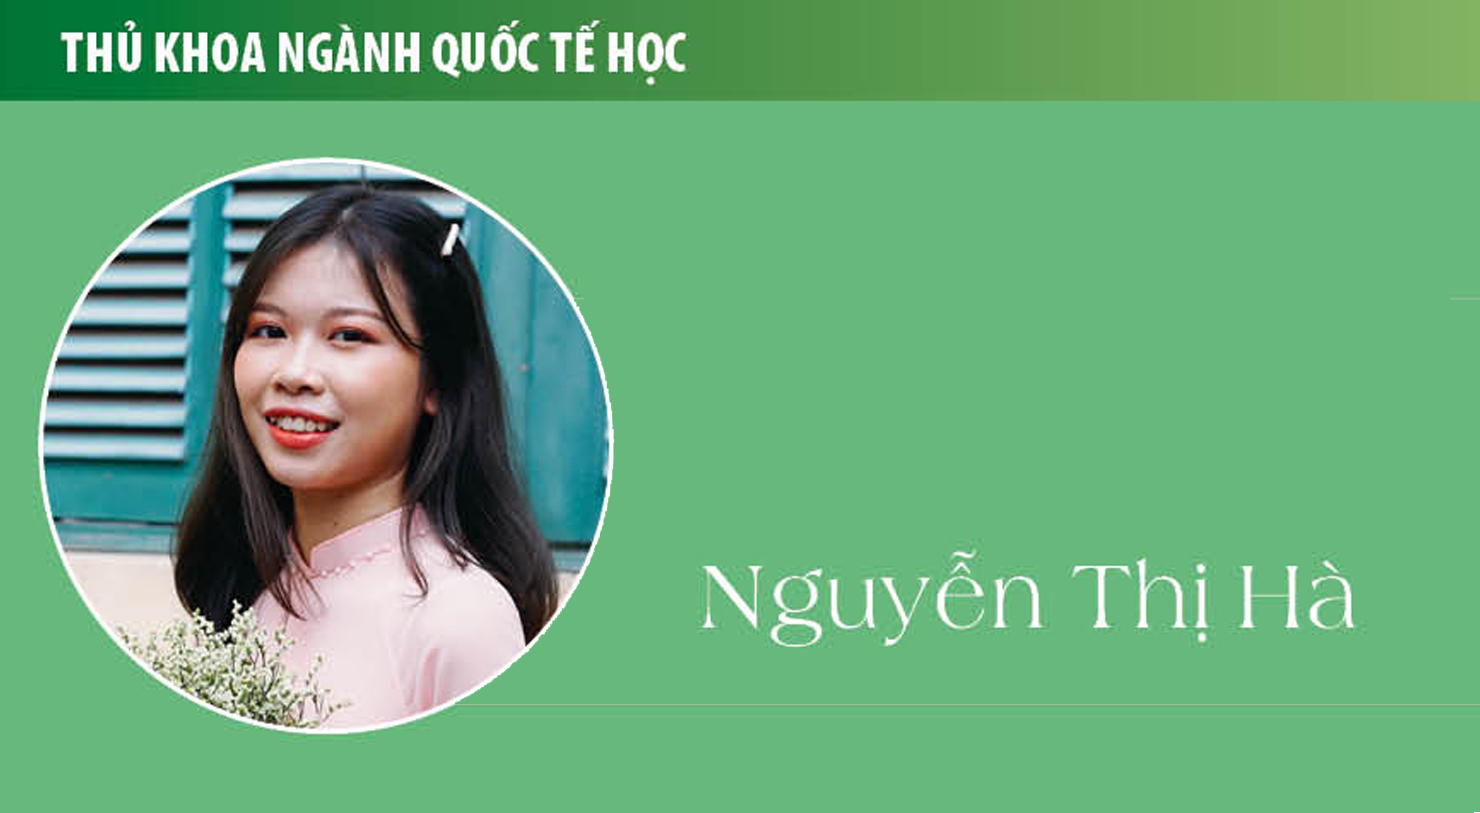 Thủ khoa Nguyễn Thị Hà (ngành Quốc tế học): Quốc tế học là nơi tôi trưởng thành